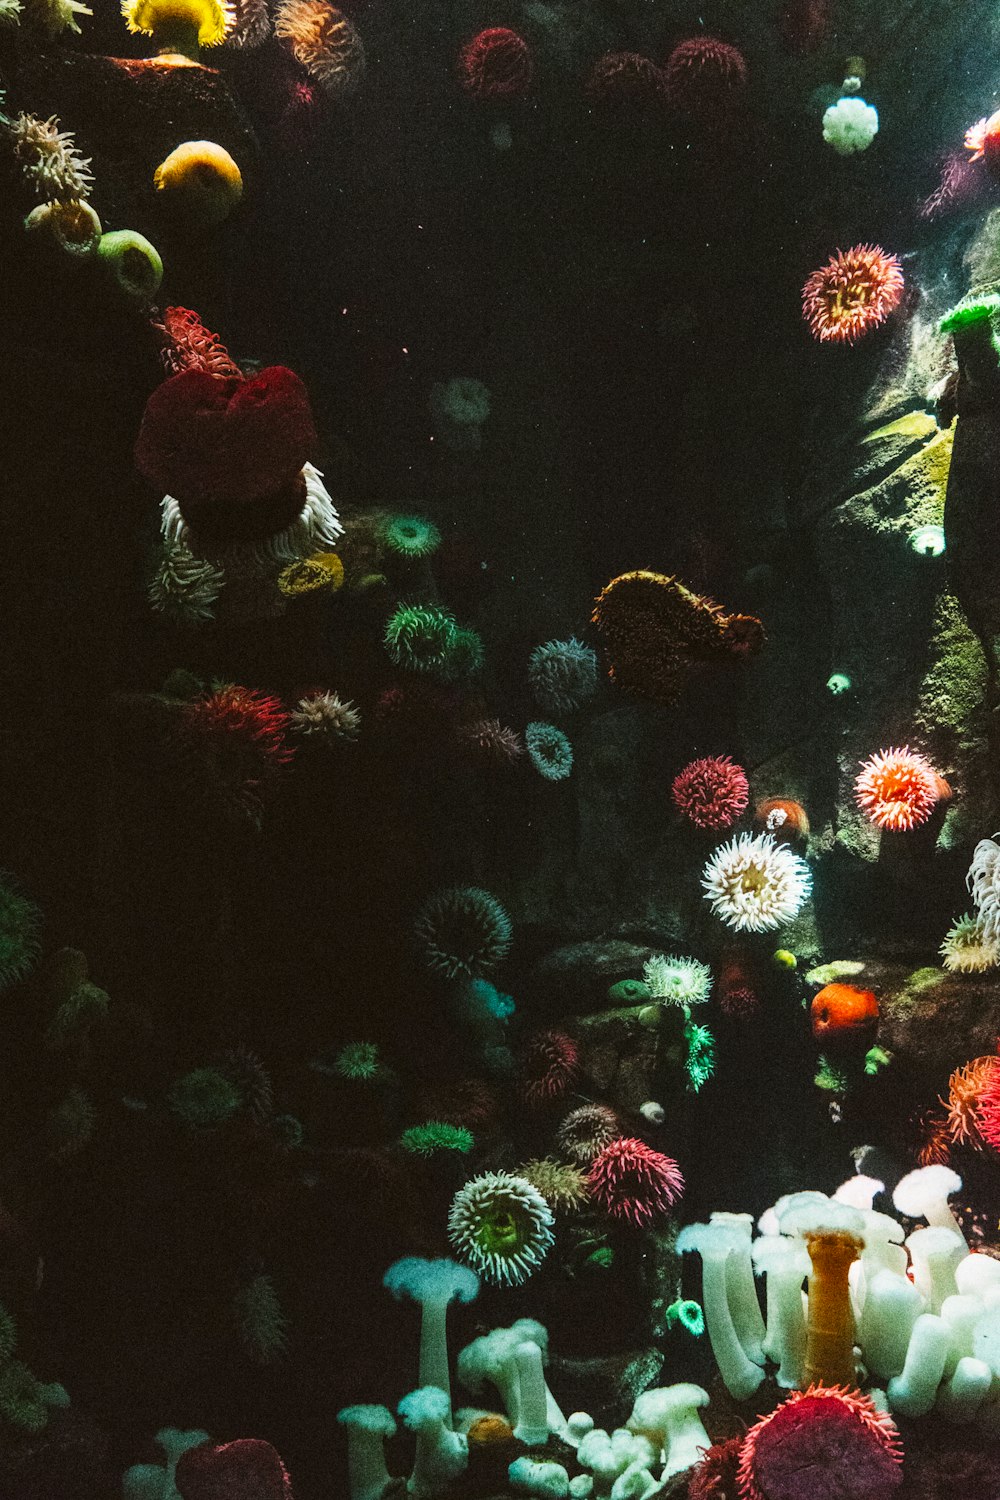 Fotografía de corales marinos